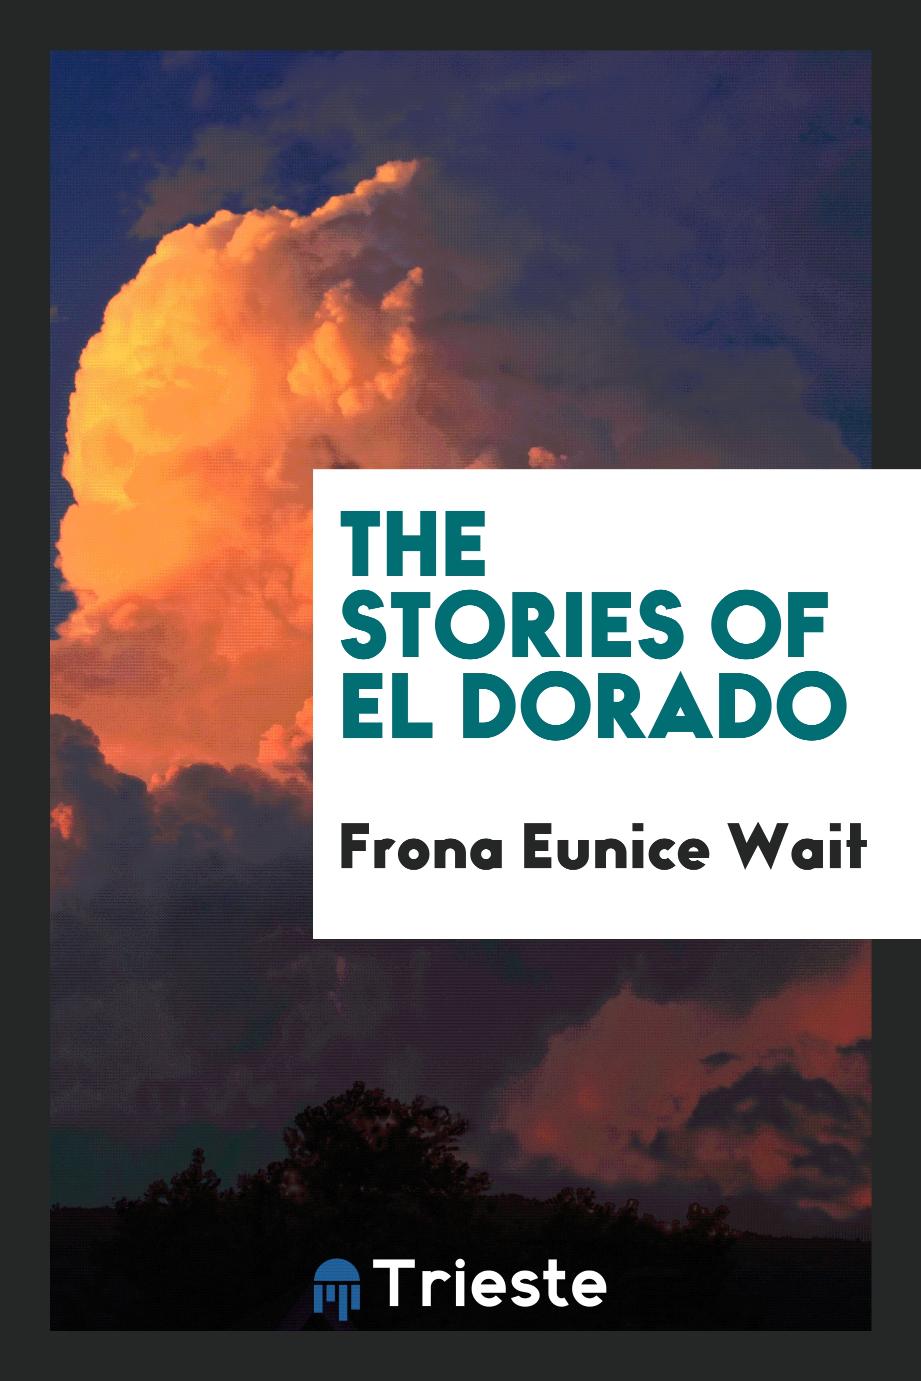 The stories of El Dorado